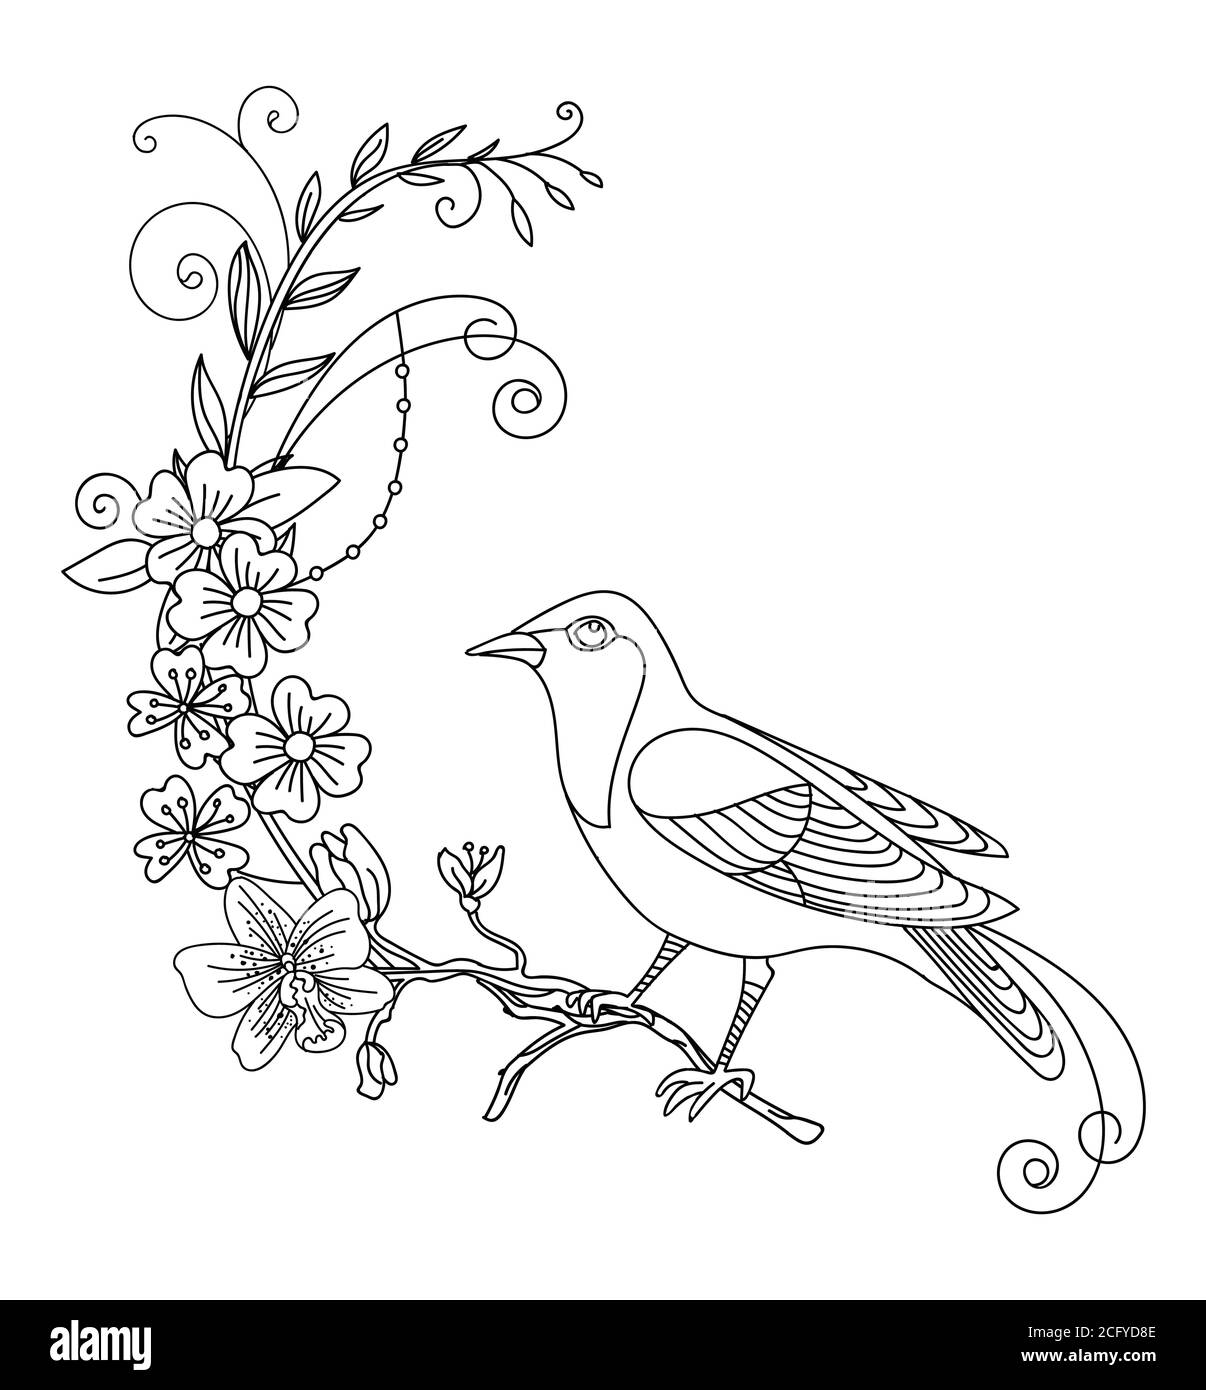 Linea vettoriale uccello e fiori astratti. Illustrazione del contorno nero isolata su bianco. Modello monocromatico disegnato a mano vettoriale per libro da colorare, wedd Illustrazione Vettoriale